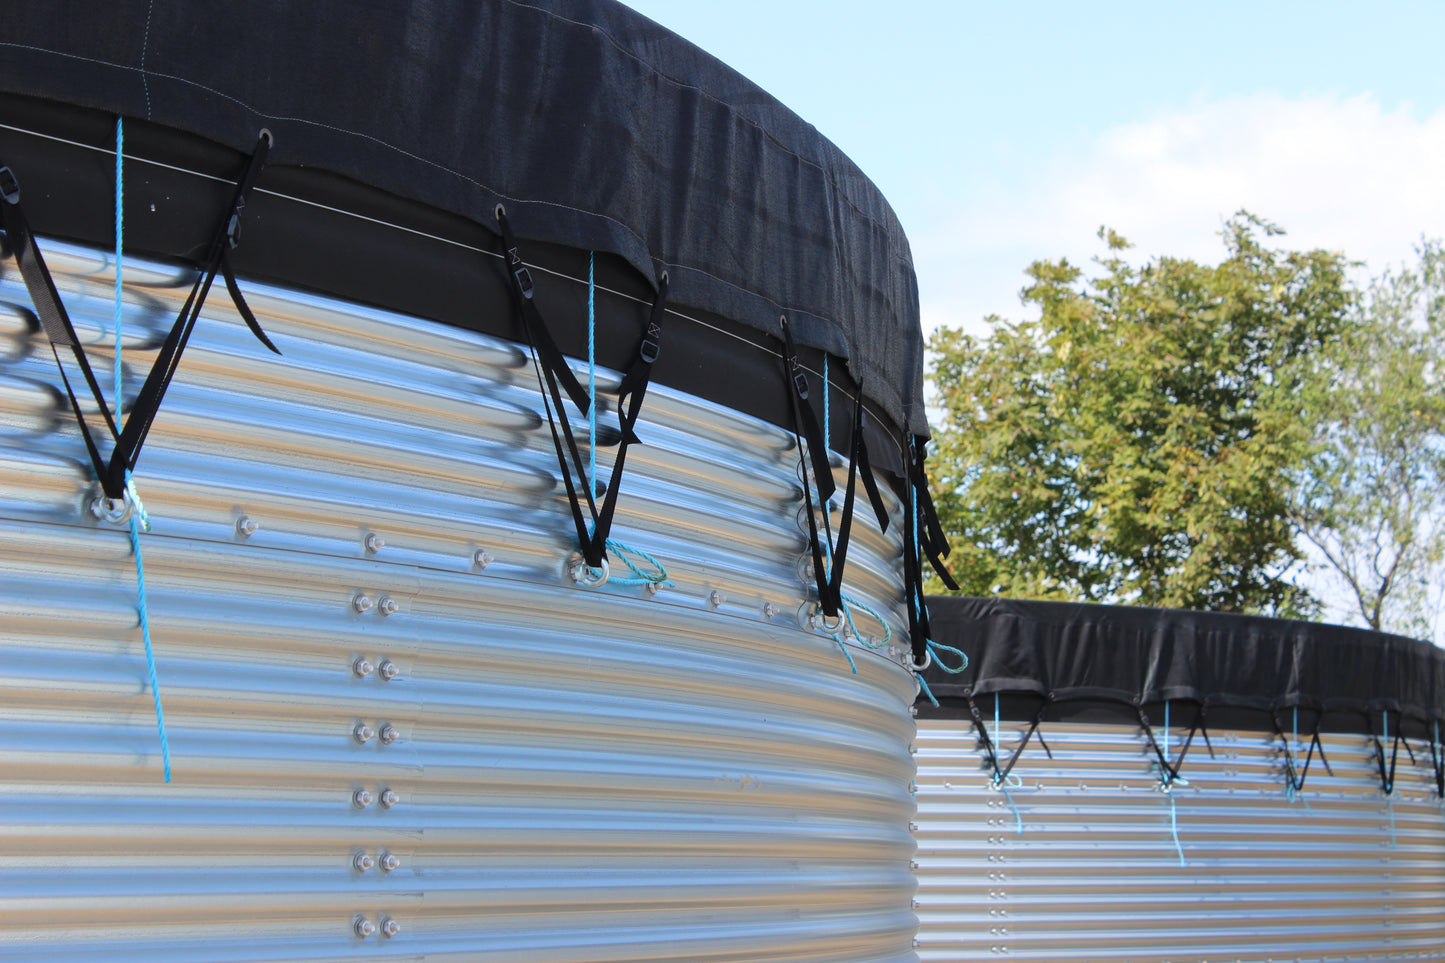 72,000 litre Galvanised Steel Water Tank